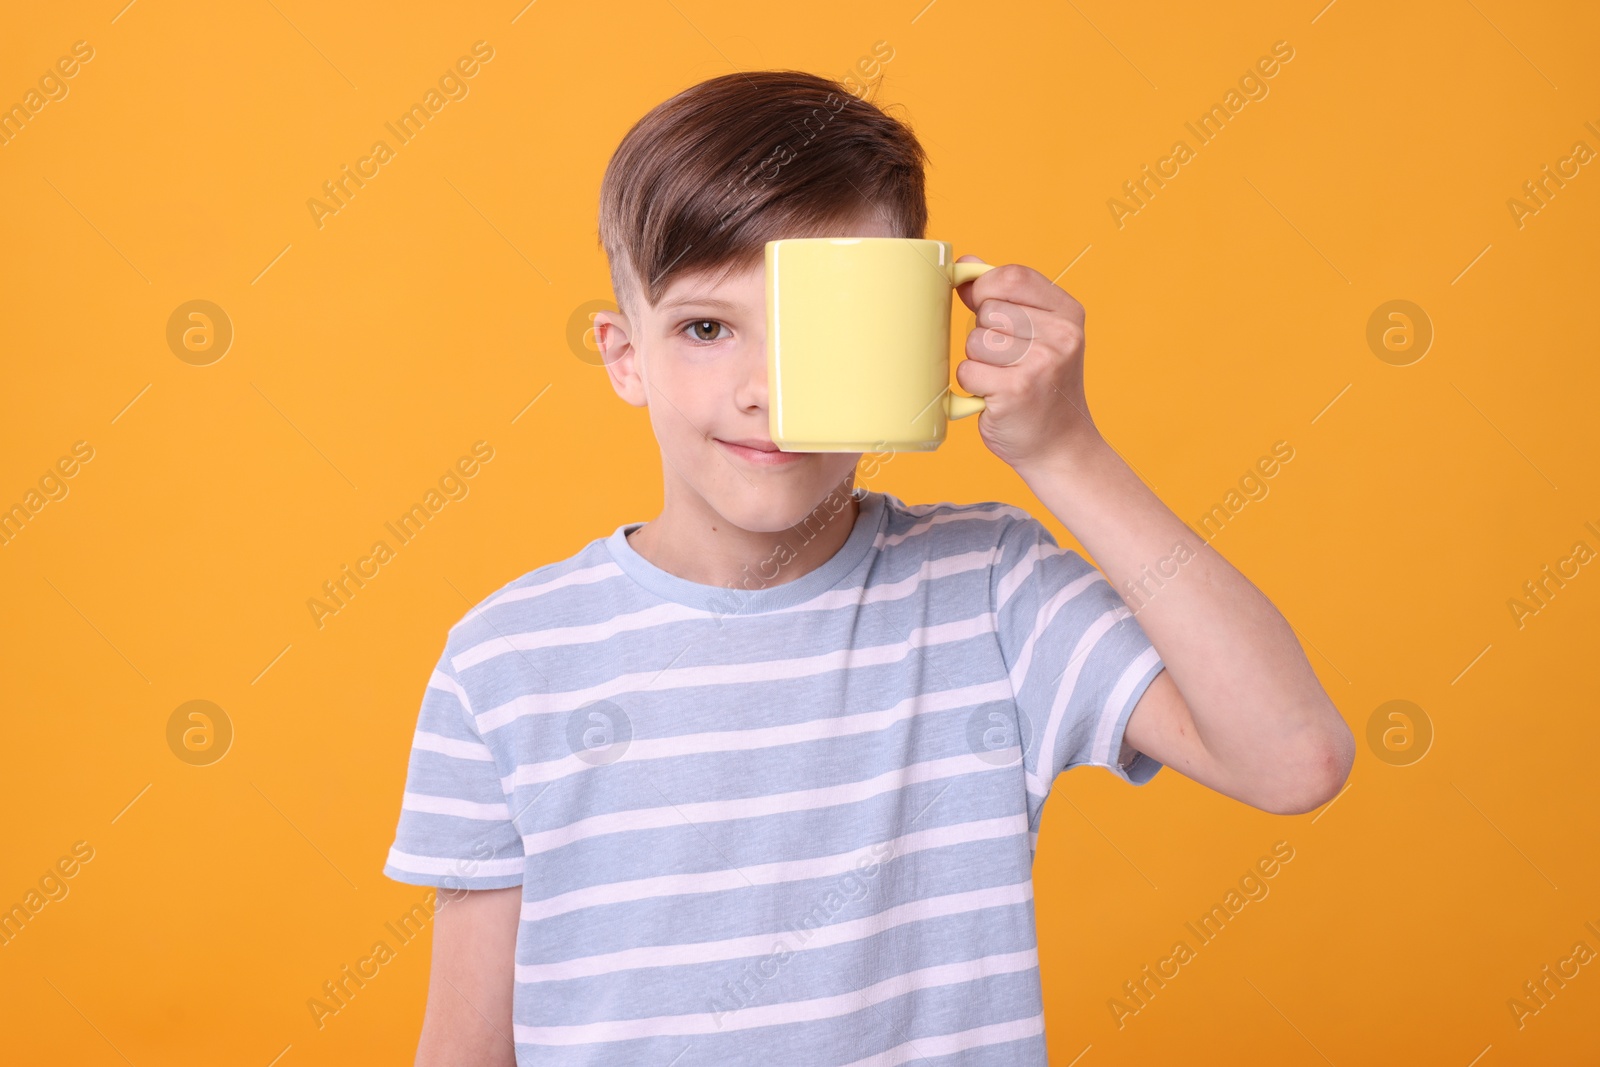 Photo of Cute boy covering eye with yellow ceramic mug on orange background